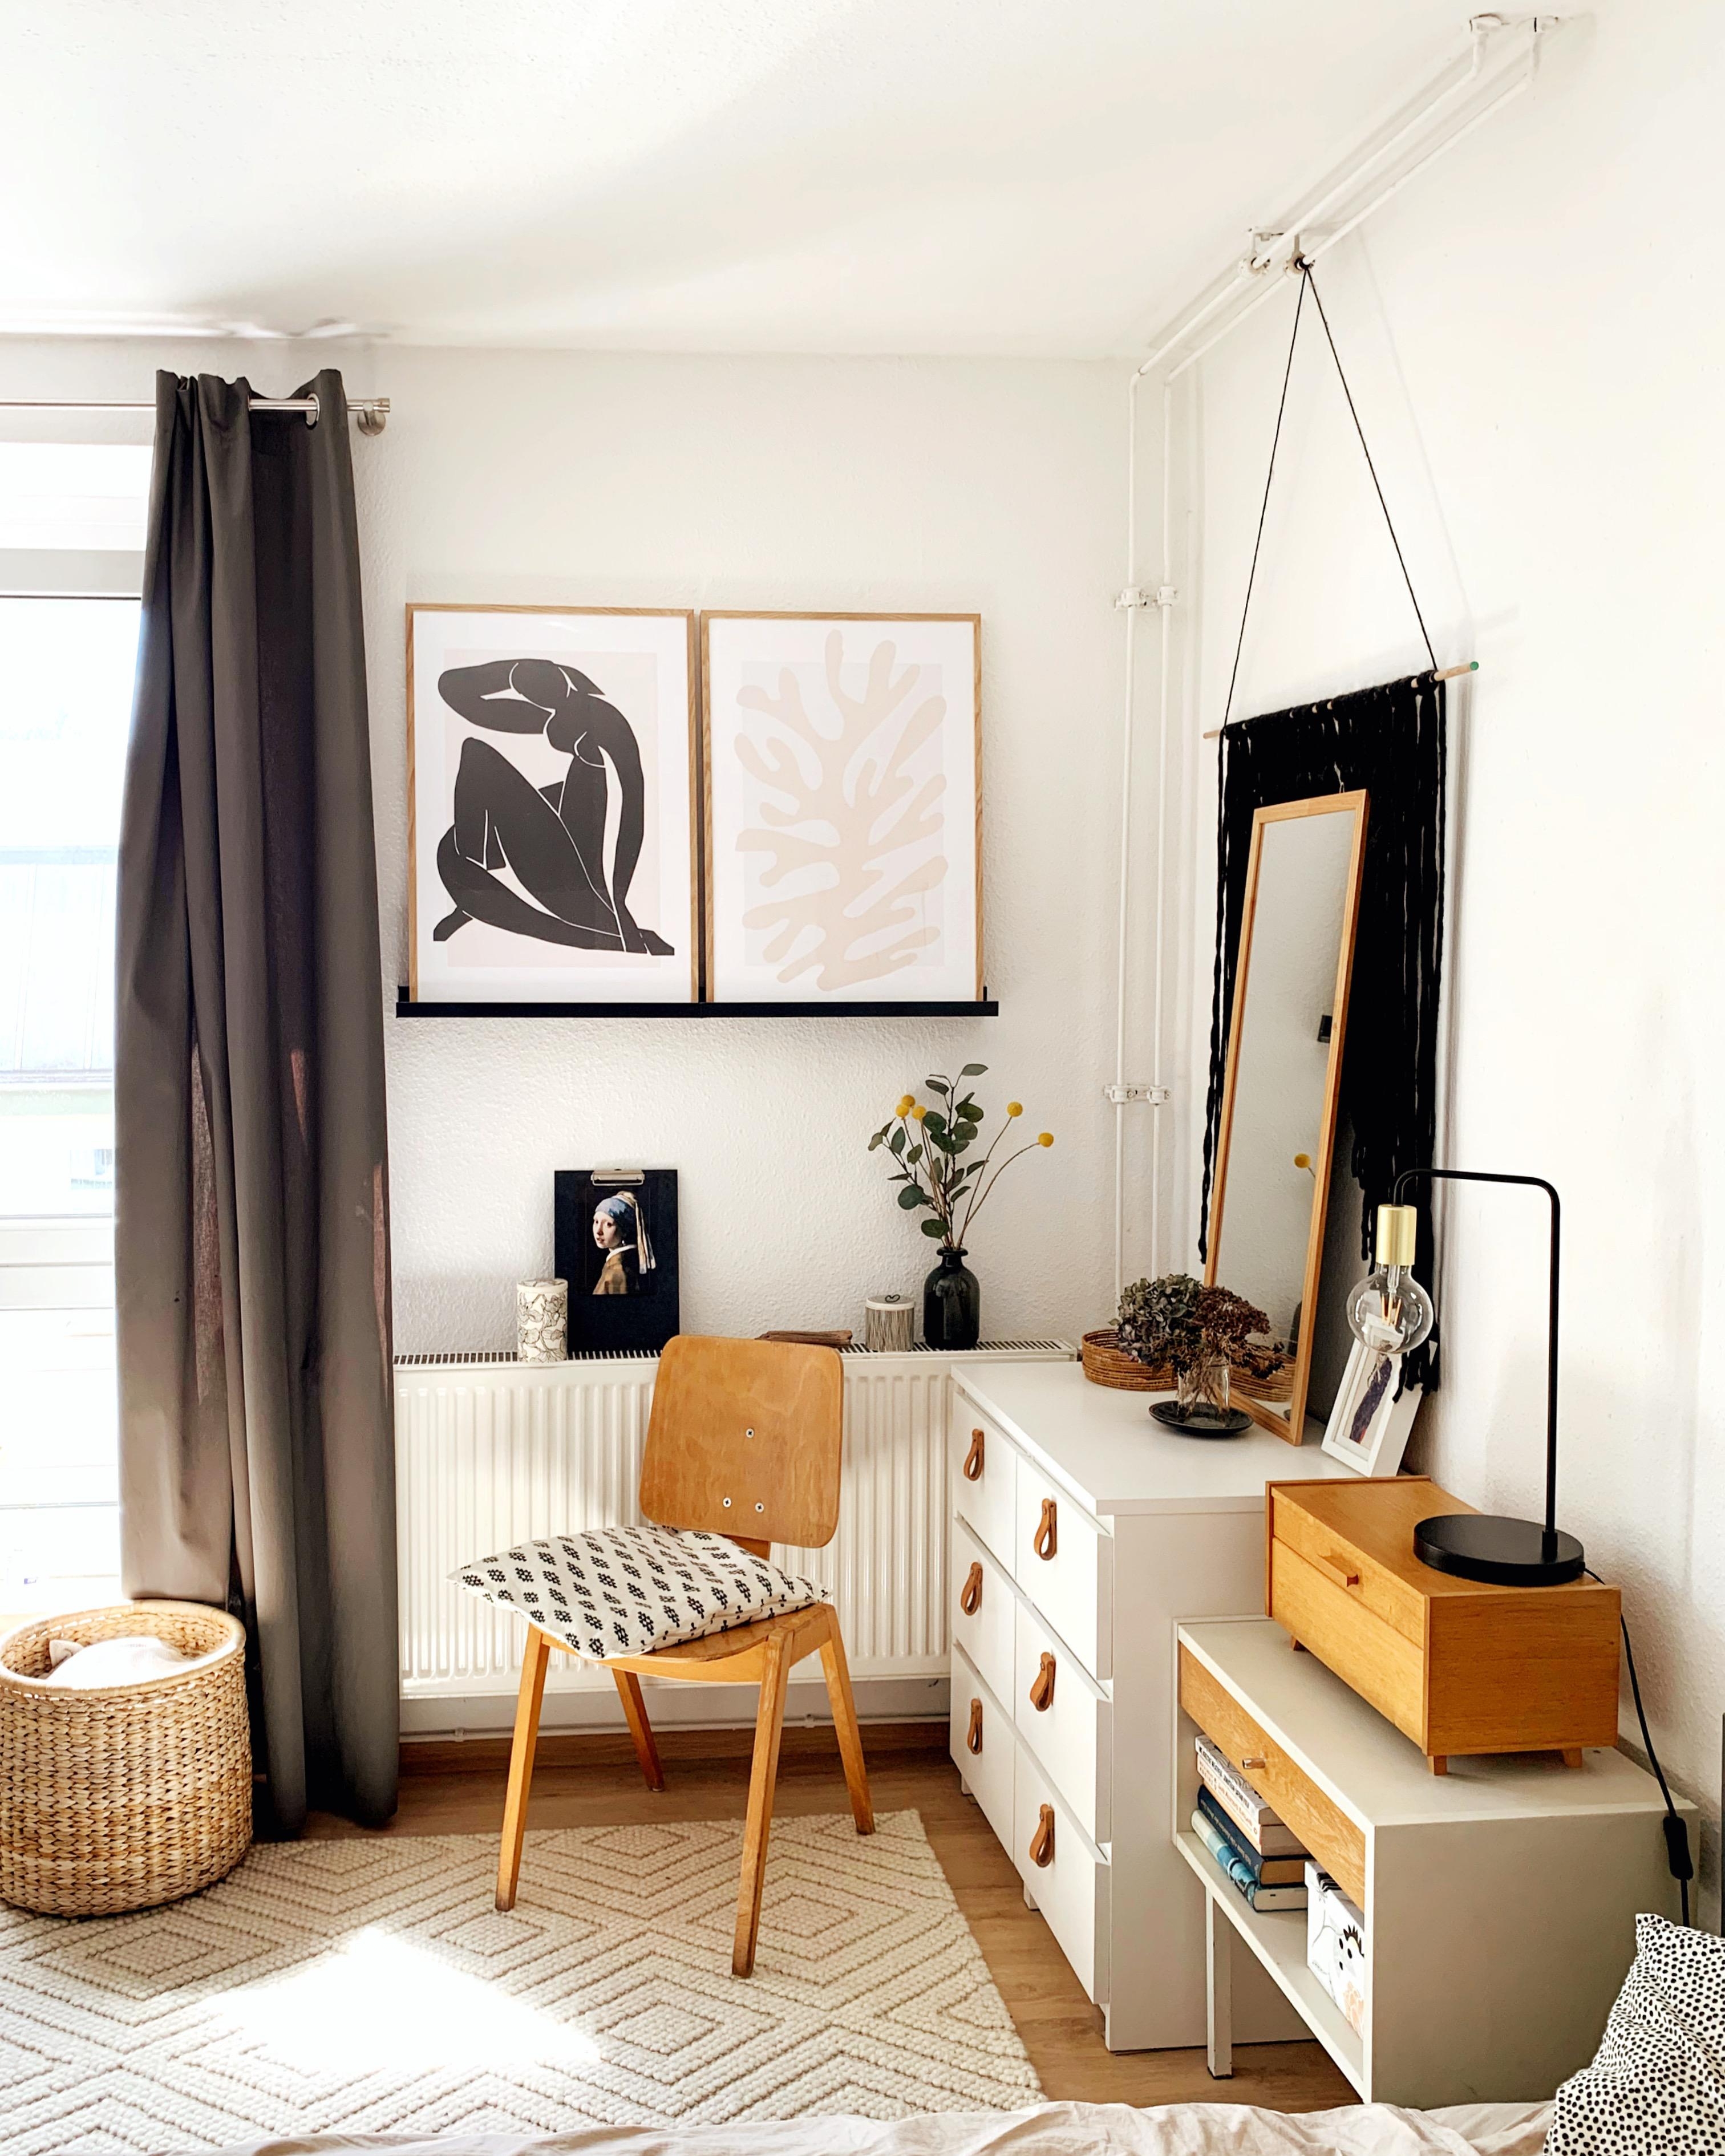 Holz-Details machen alles gemütlicher #homeinterior #vintage #schlafzimmer